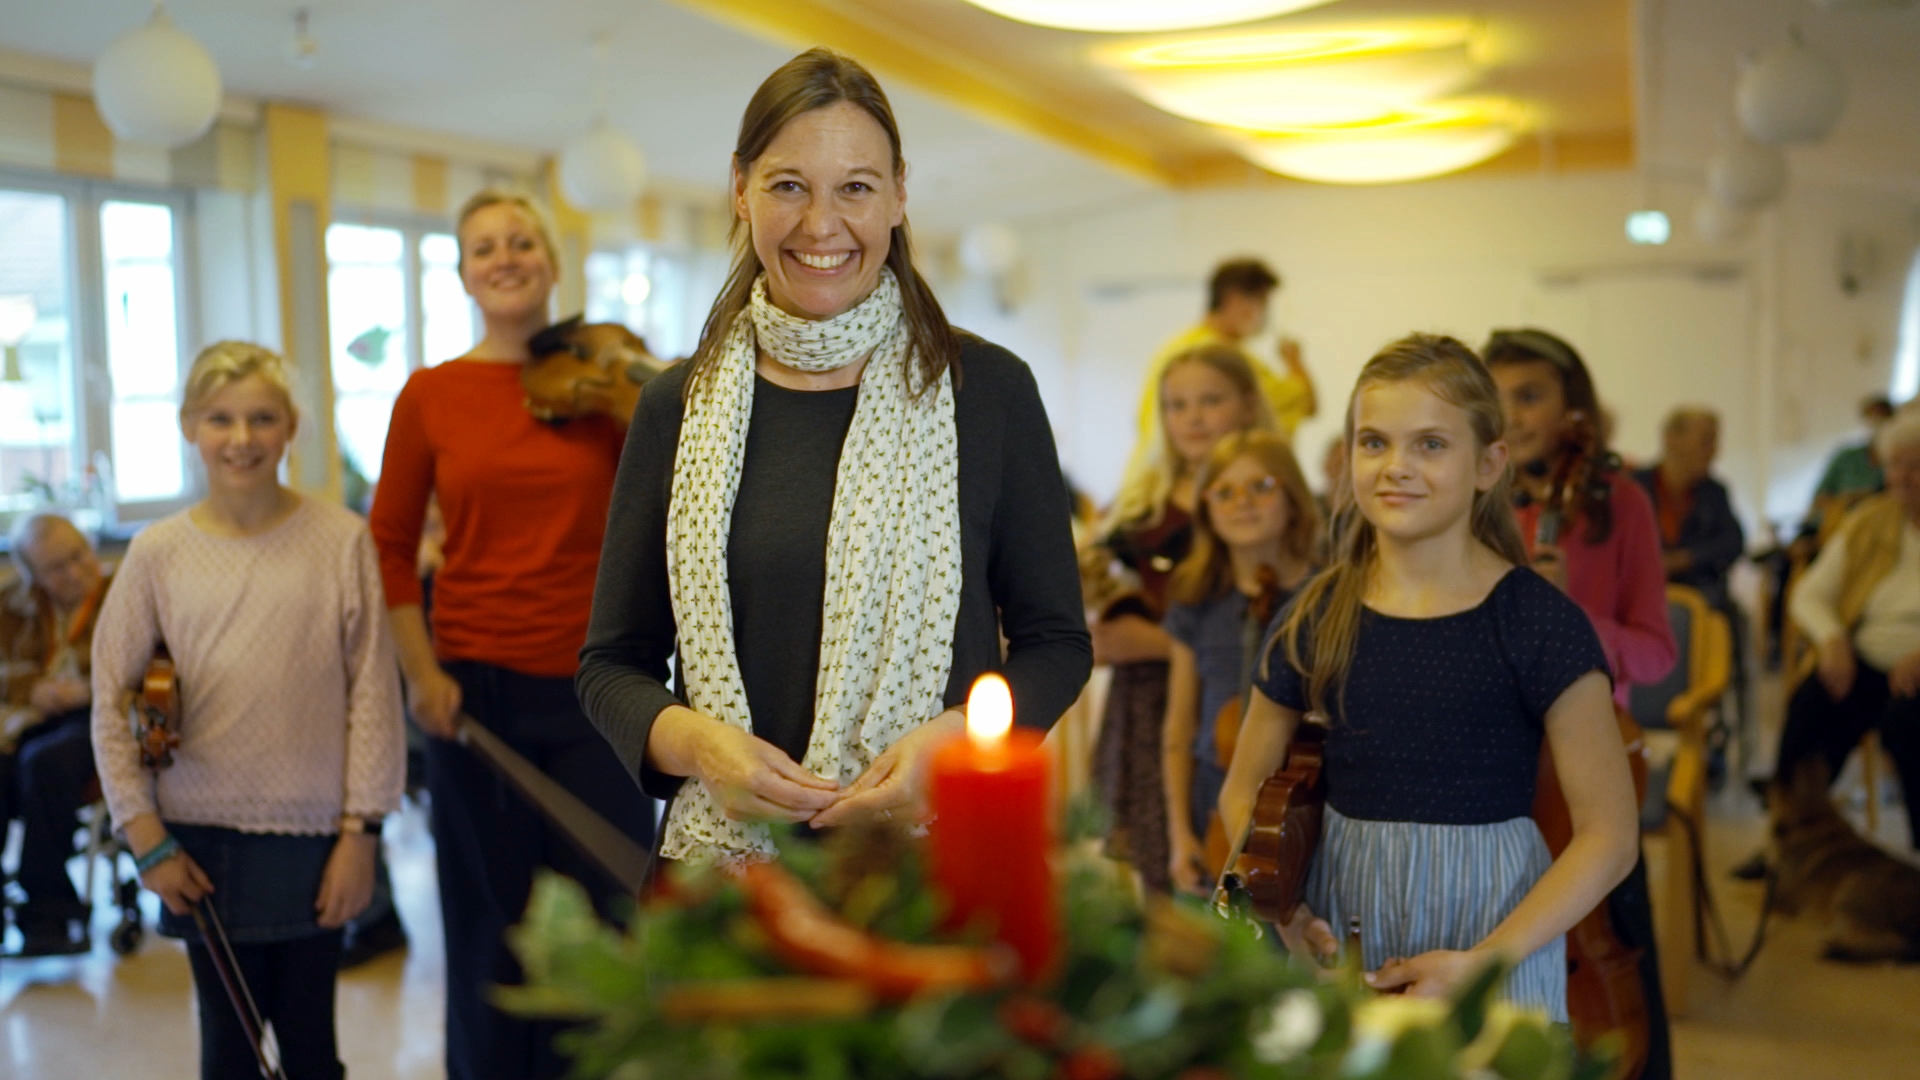 Am ersten Advent wird das Projekt "Die Glücksbringer" der Lübecker Freiwilligenagentur in unseren Gewinnzahlen vorgestellt.